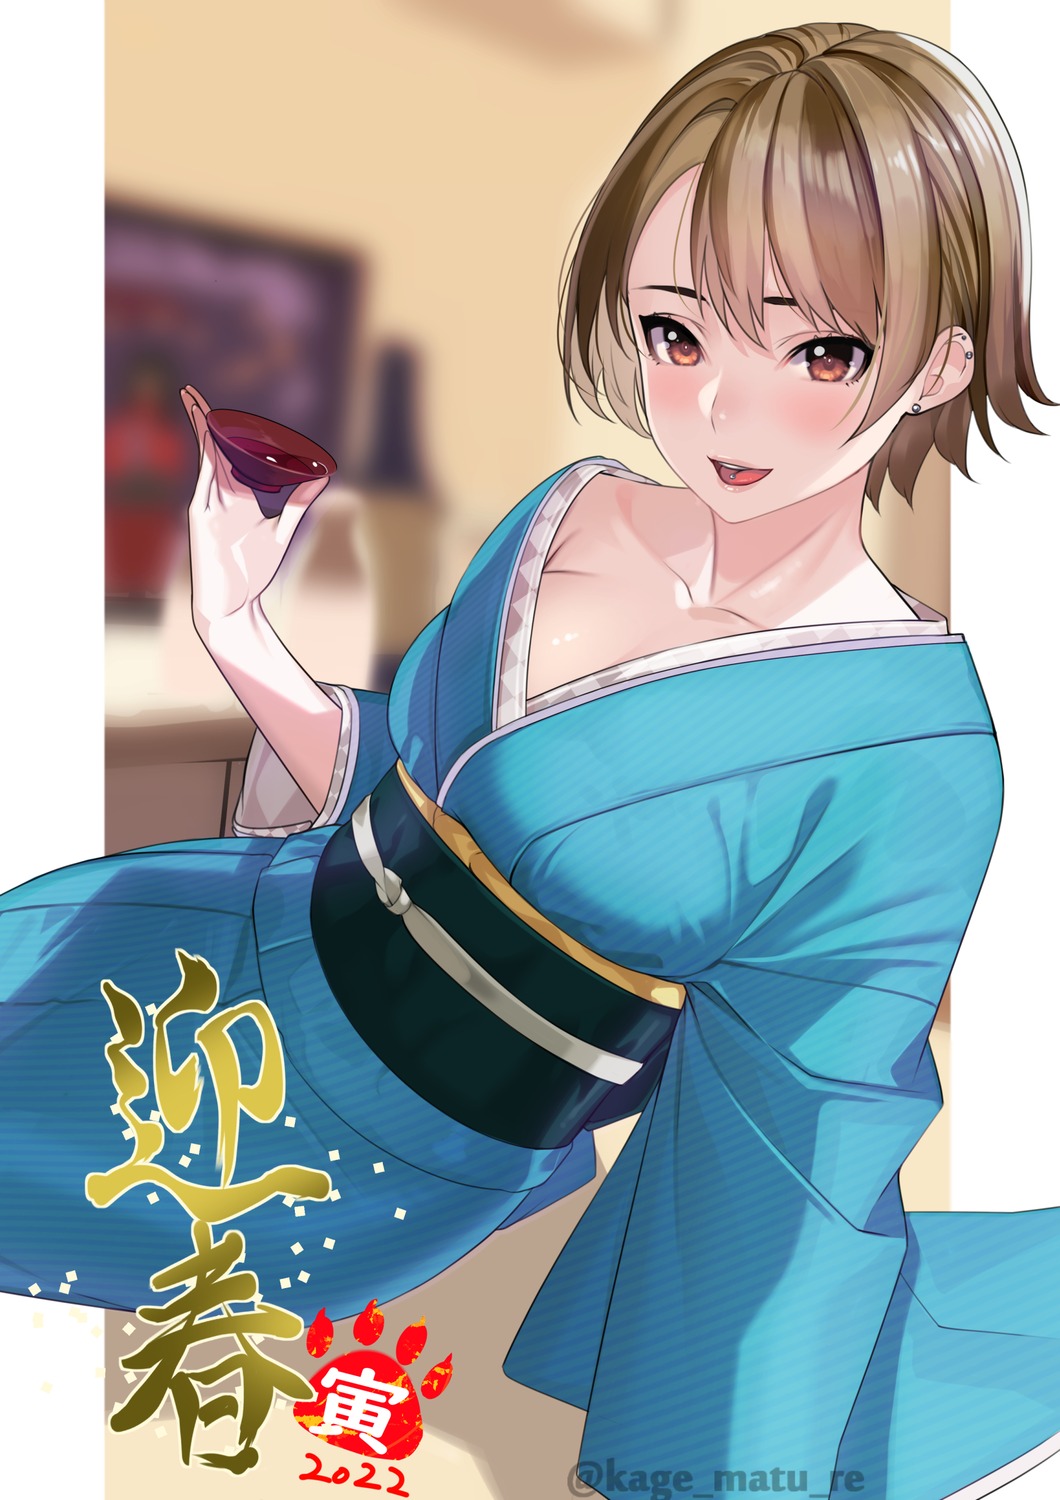 kagematsuri kimono no_bra open_shirt sake